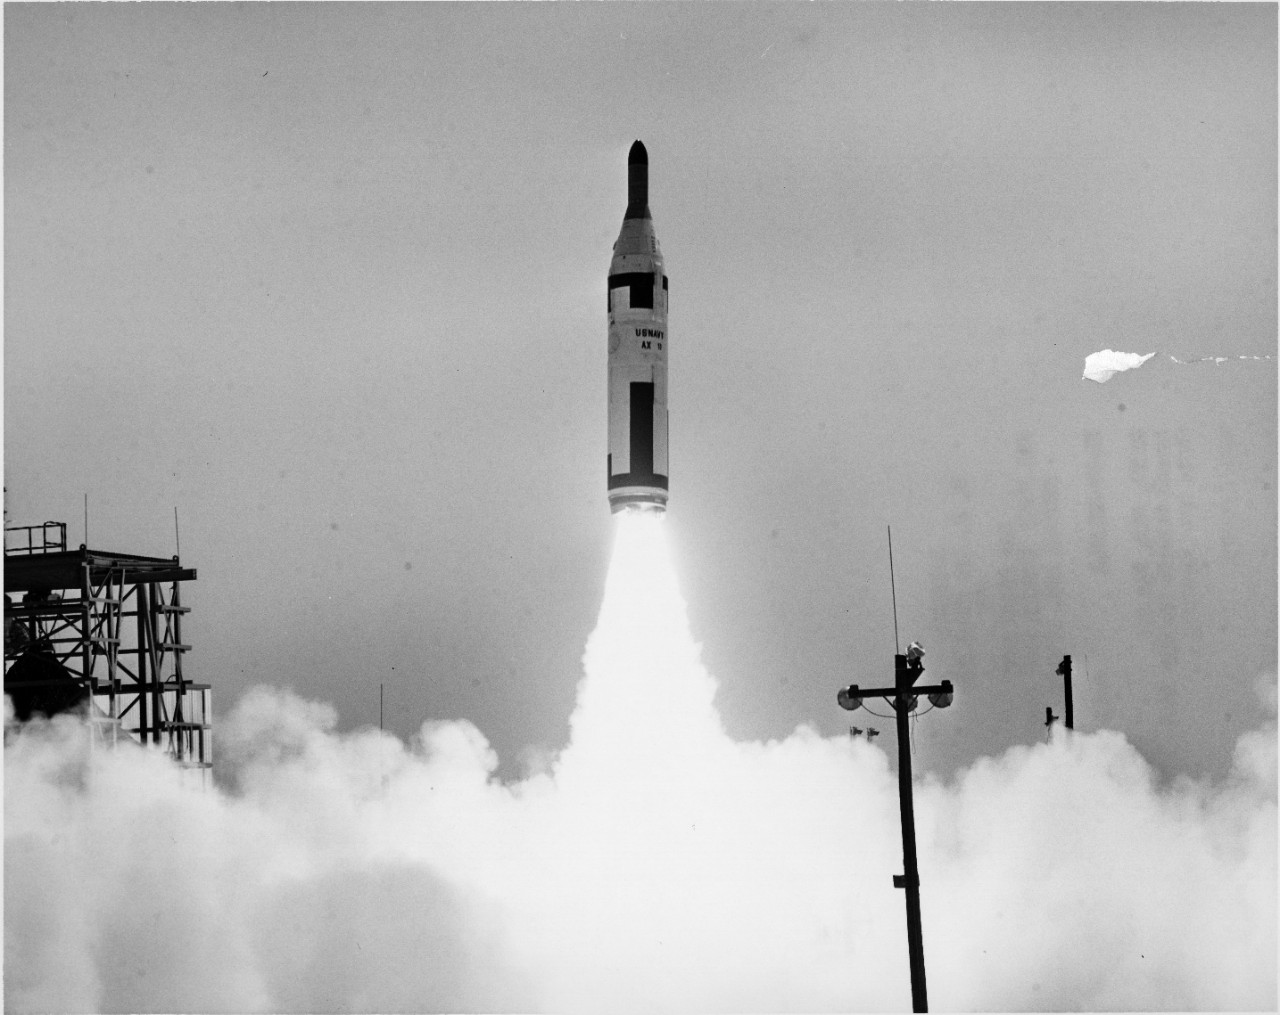 <p>L55-15.01.17 AX-9 Polaris Missile Launching</p>
